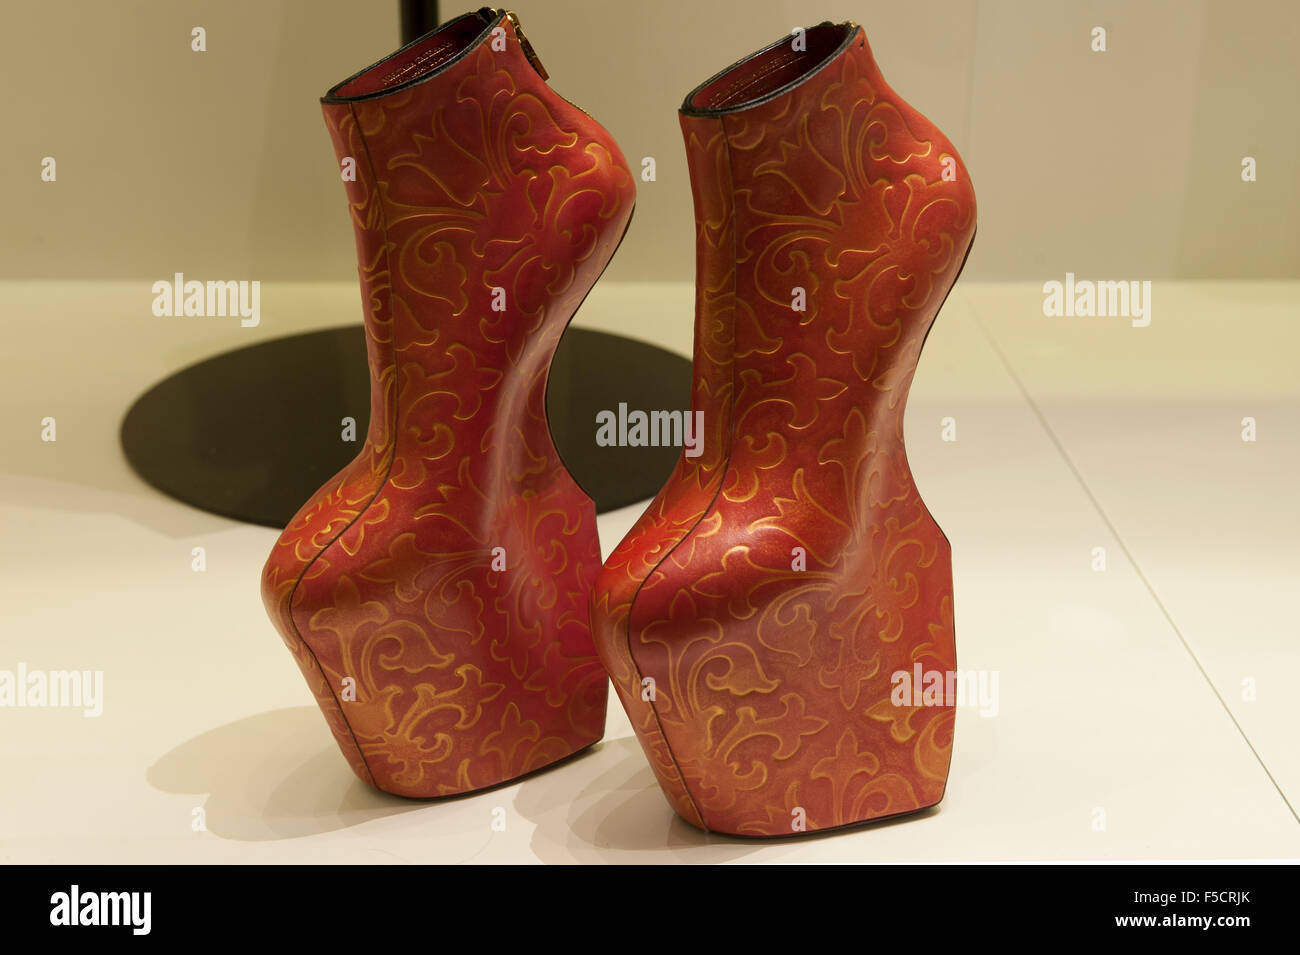 PHOTOS] Daphne Guinness, The Heel-Less Wonder – Footwear News